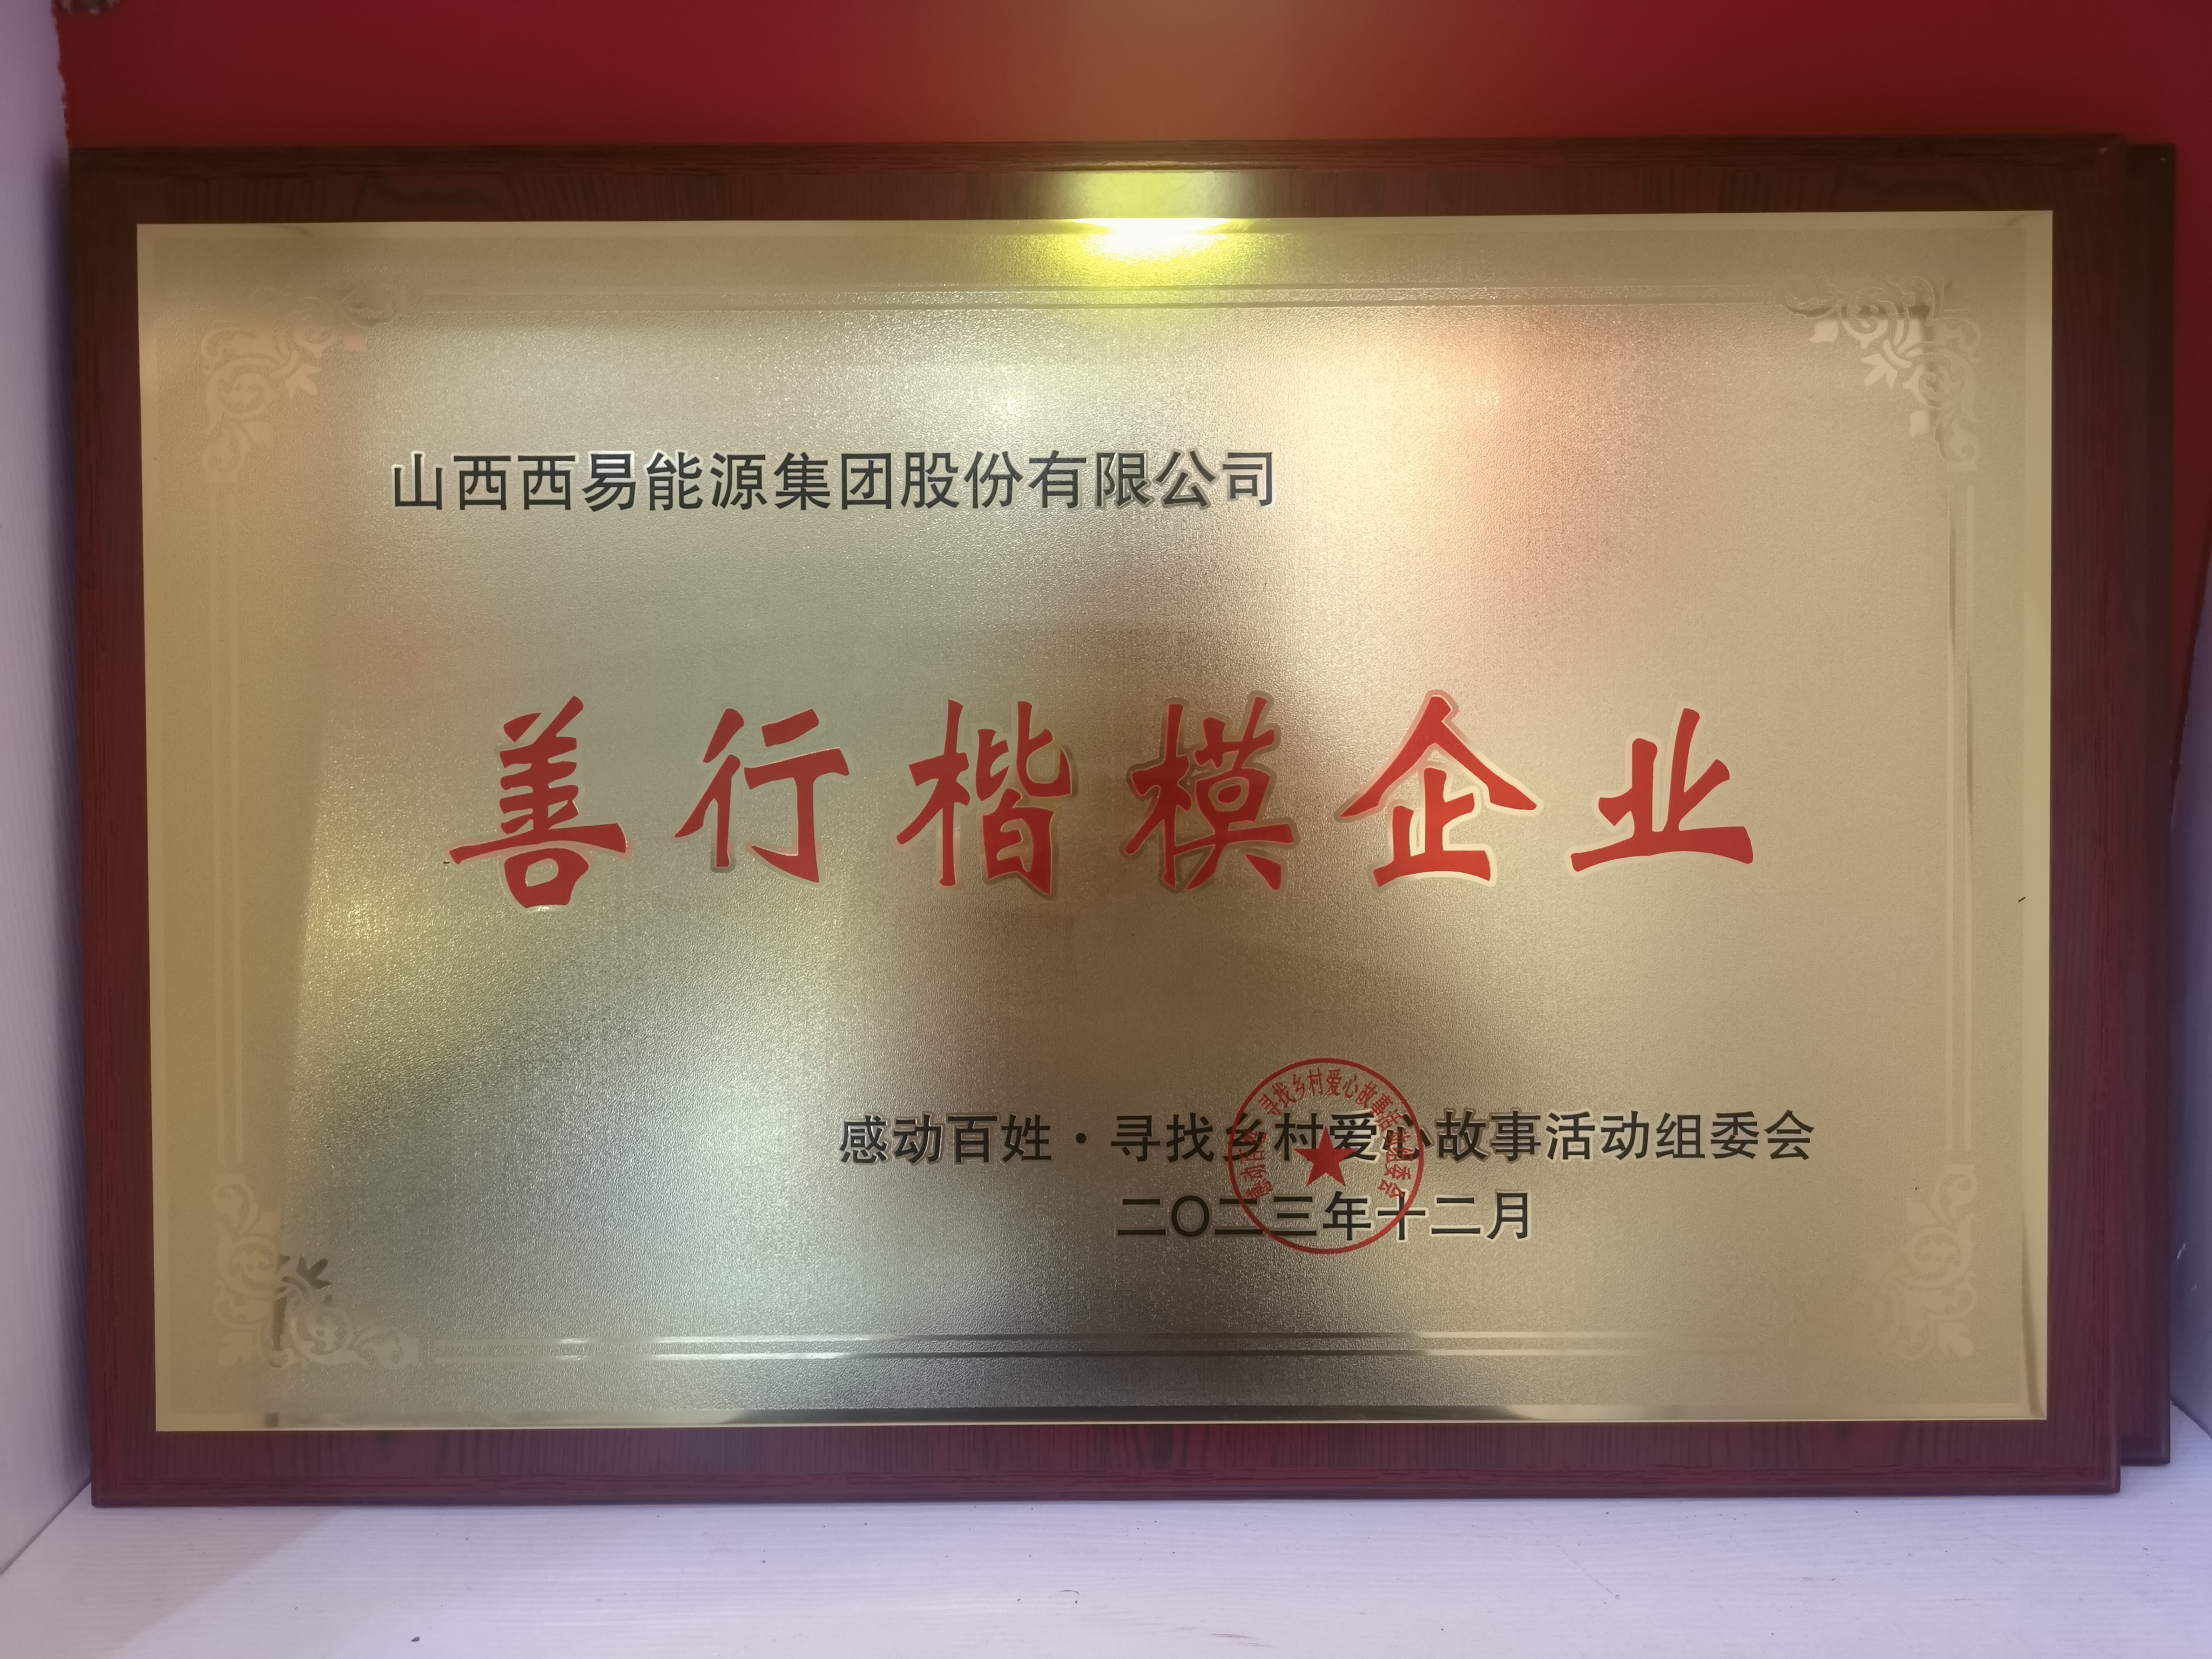 西易集团荣获“善行楷模企业”荣誉称号